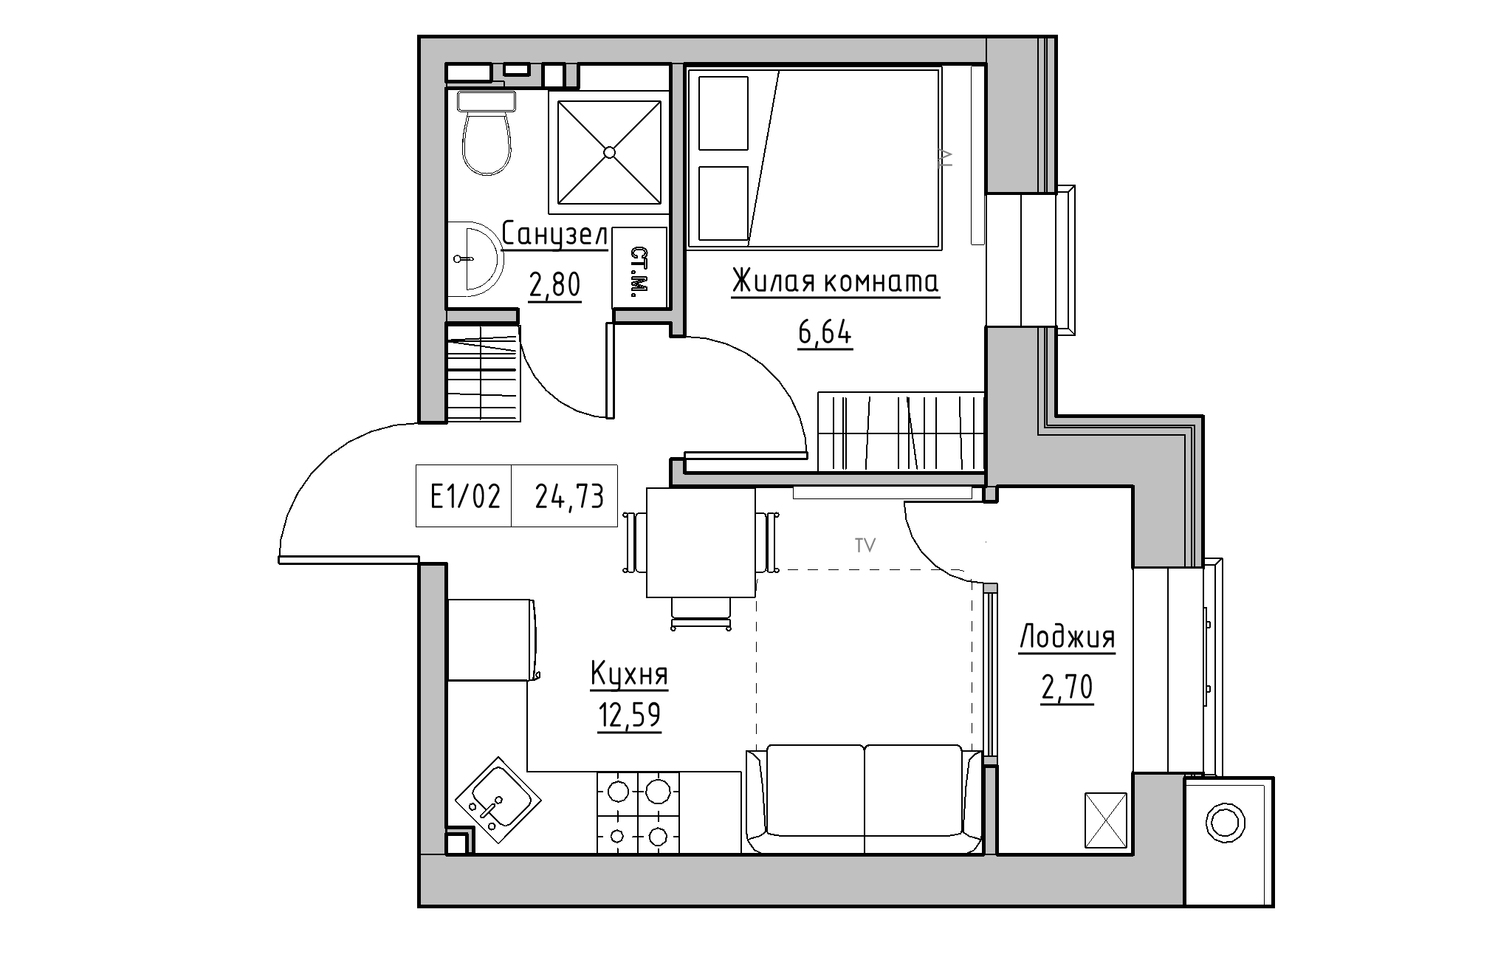 Планування 1-к квартира площею 24.73м2, KS-013-05/0001.